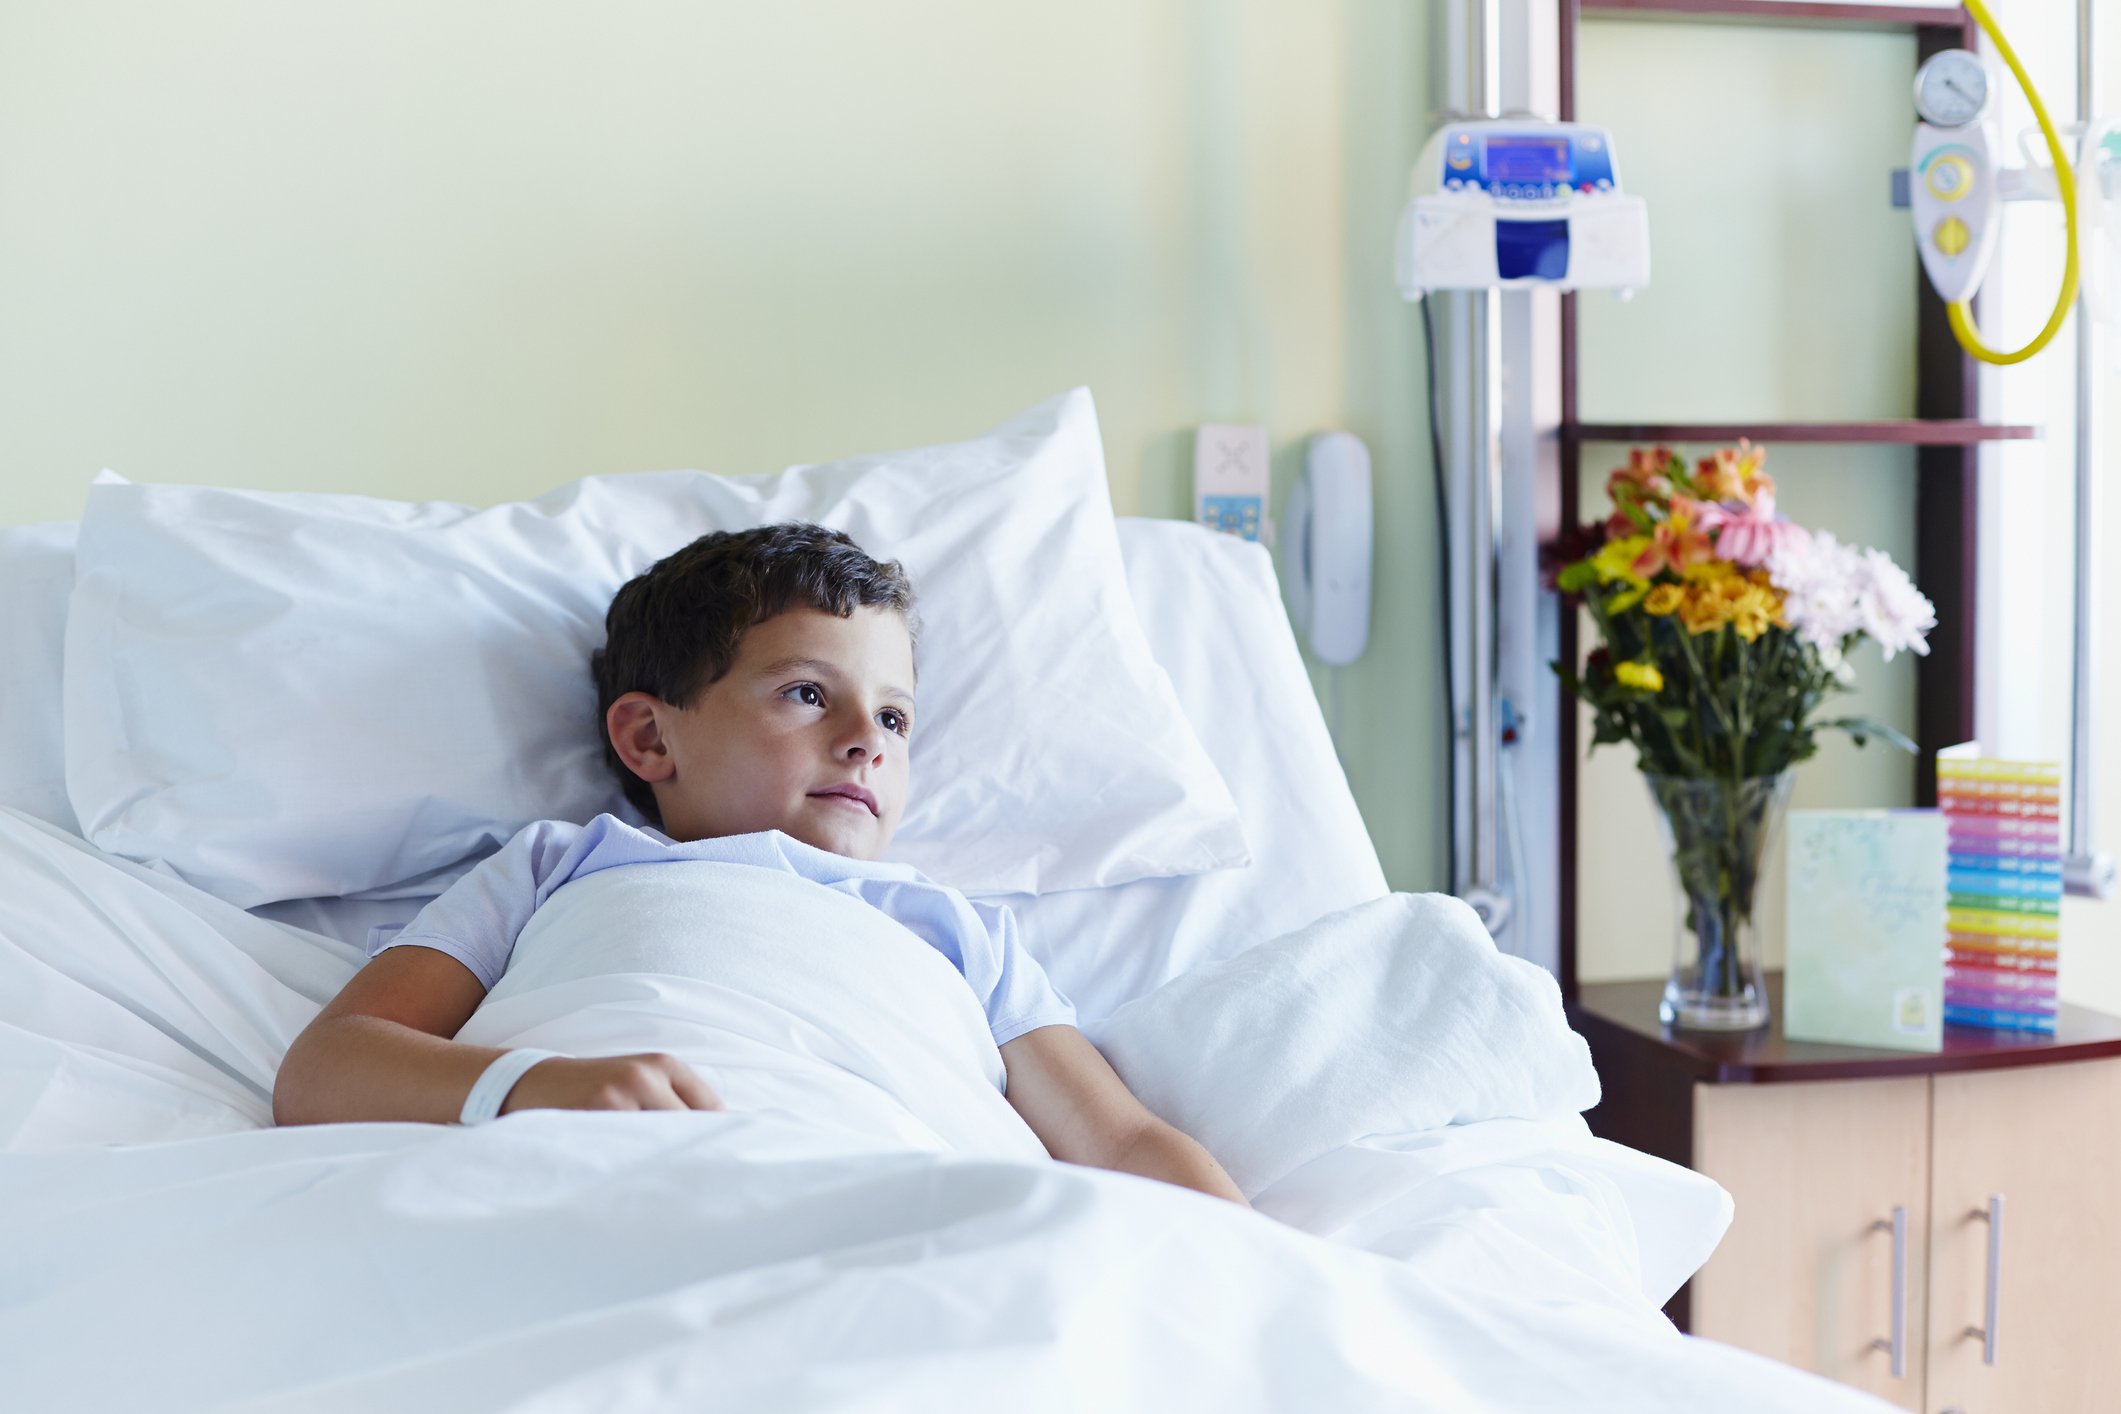 Nachdenklicher Junge im Krankenhaus I Quelle: Getty Images